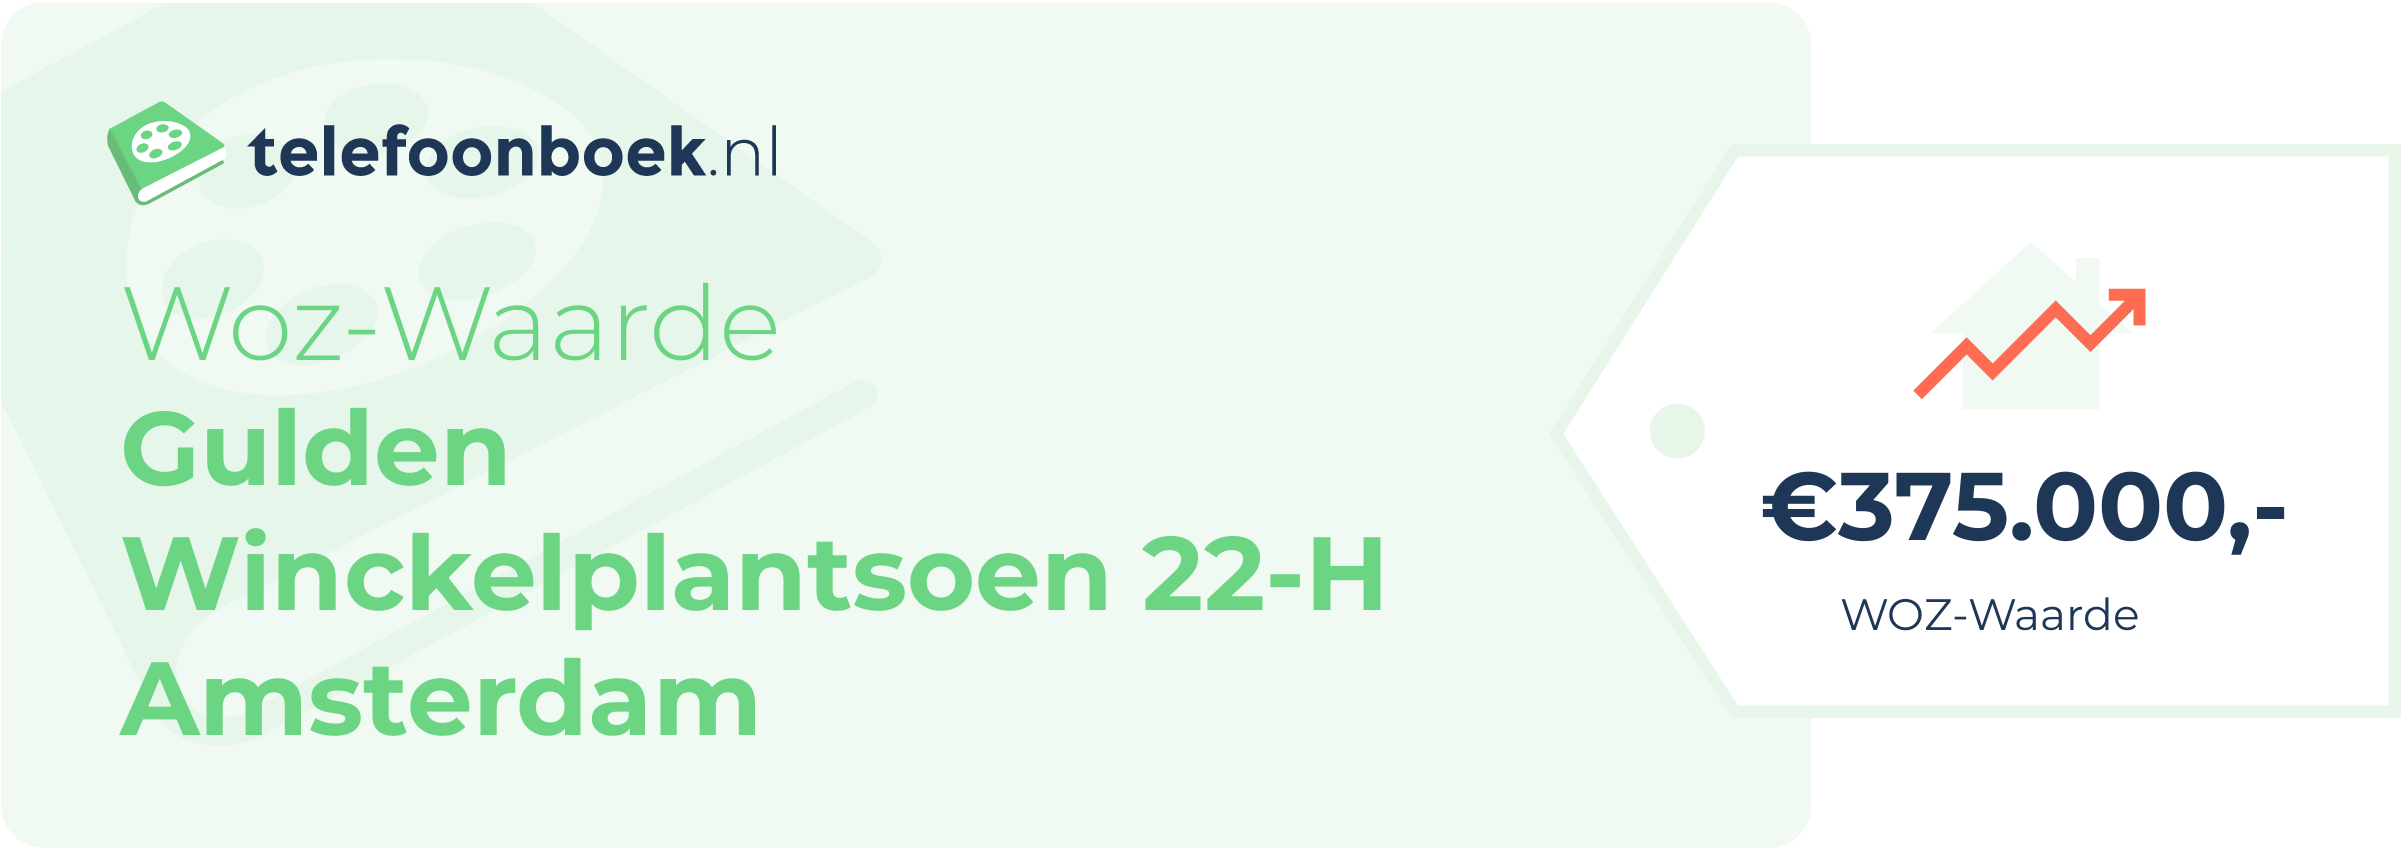 WOZ-waarde Gulden Winckelplantsoen 22-H Amsterdam